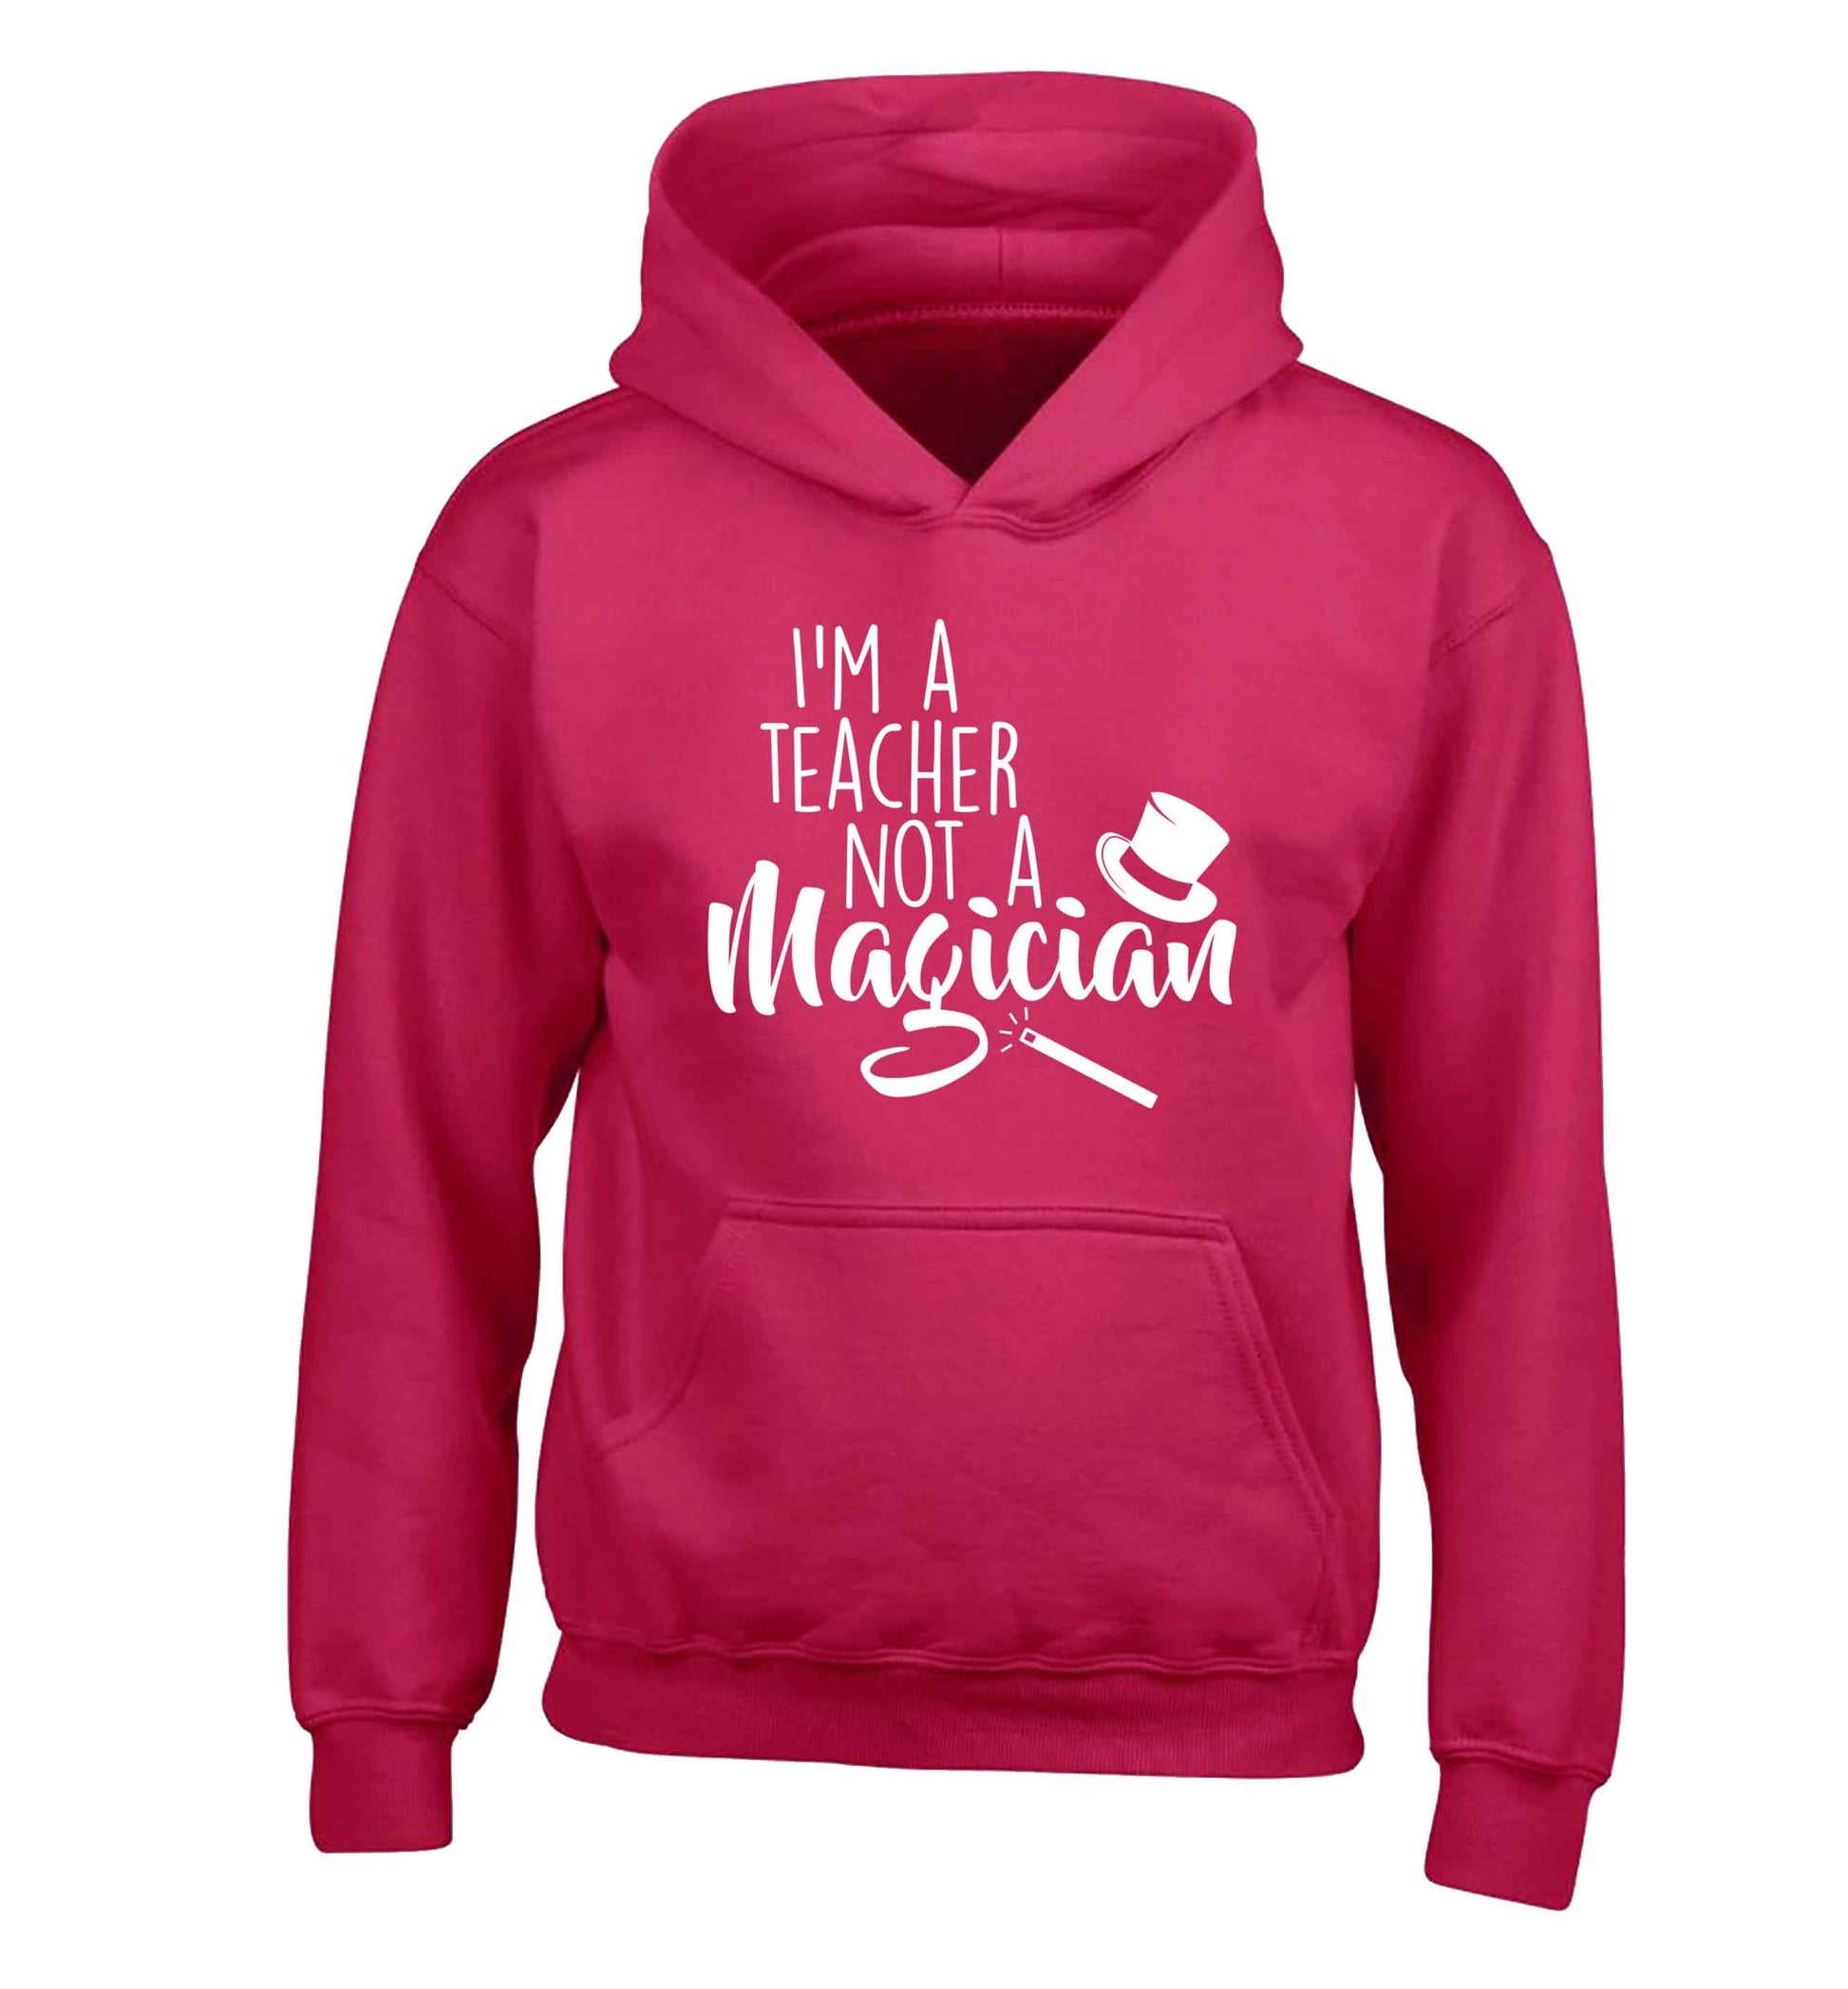 I'm a teacher not a magician children's pink hoodie 12-13 Years